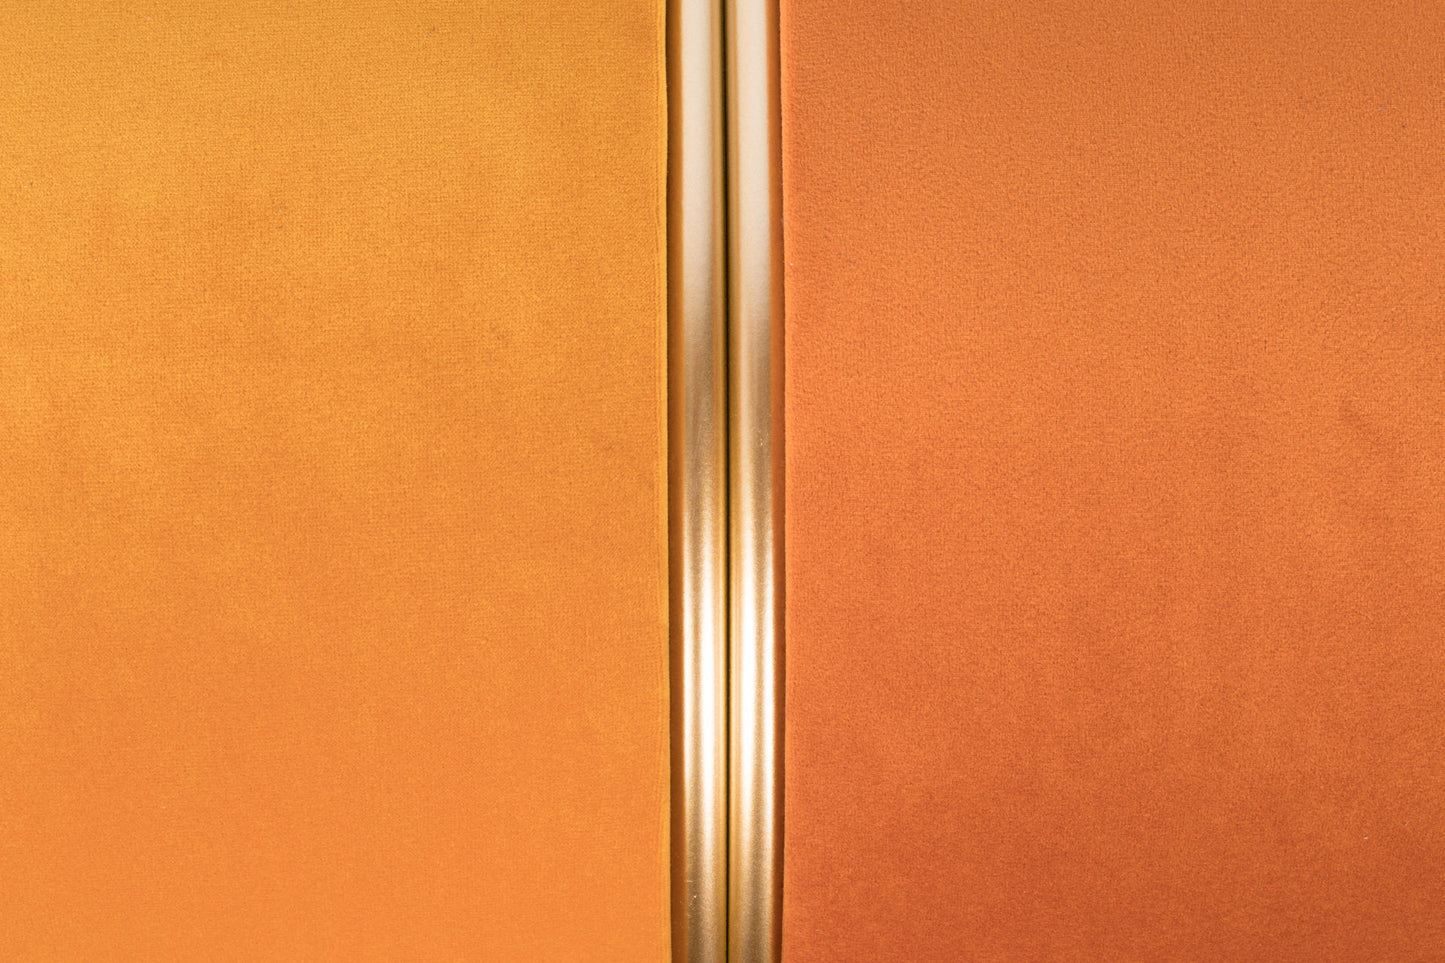 Nancy's Malverne Kruk - Retro - Oranje - Polyester, Staal, Mdf - 35 cm x 35 cm x 39 cm